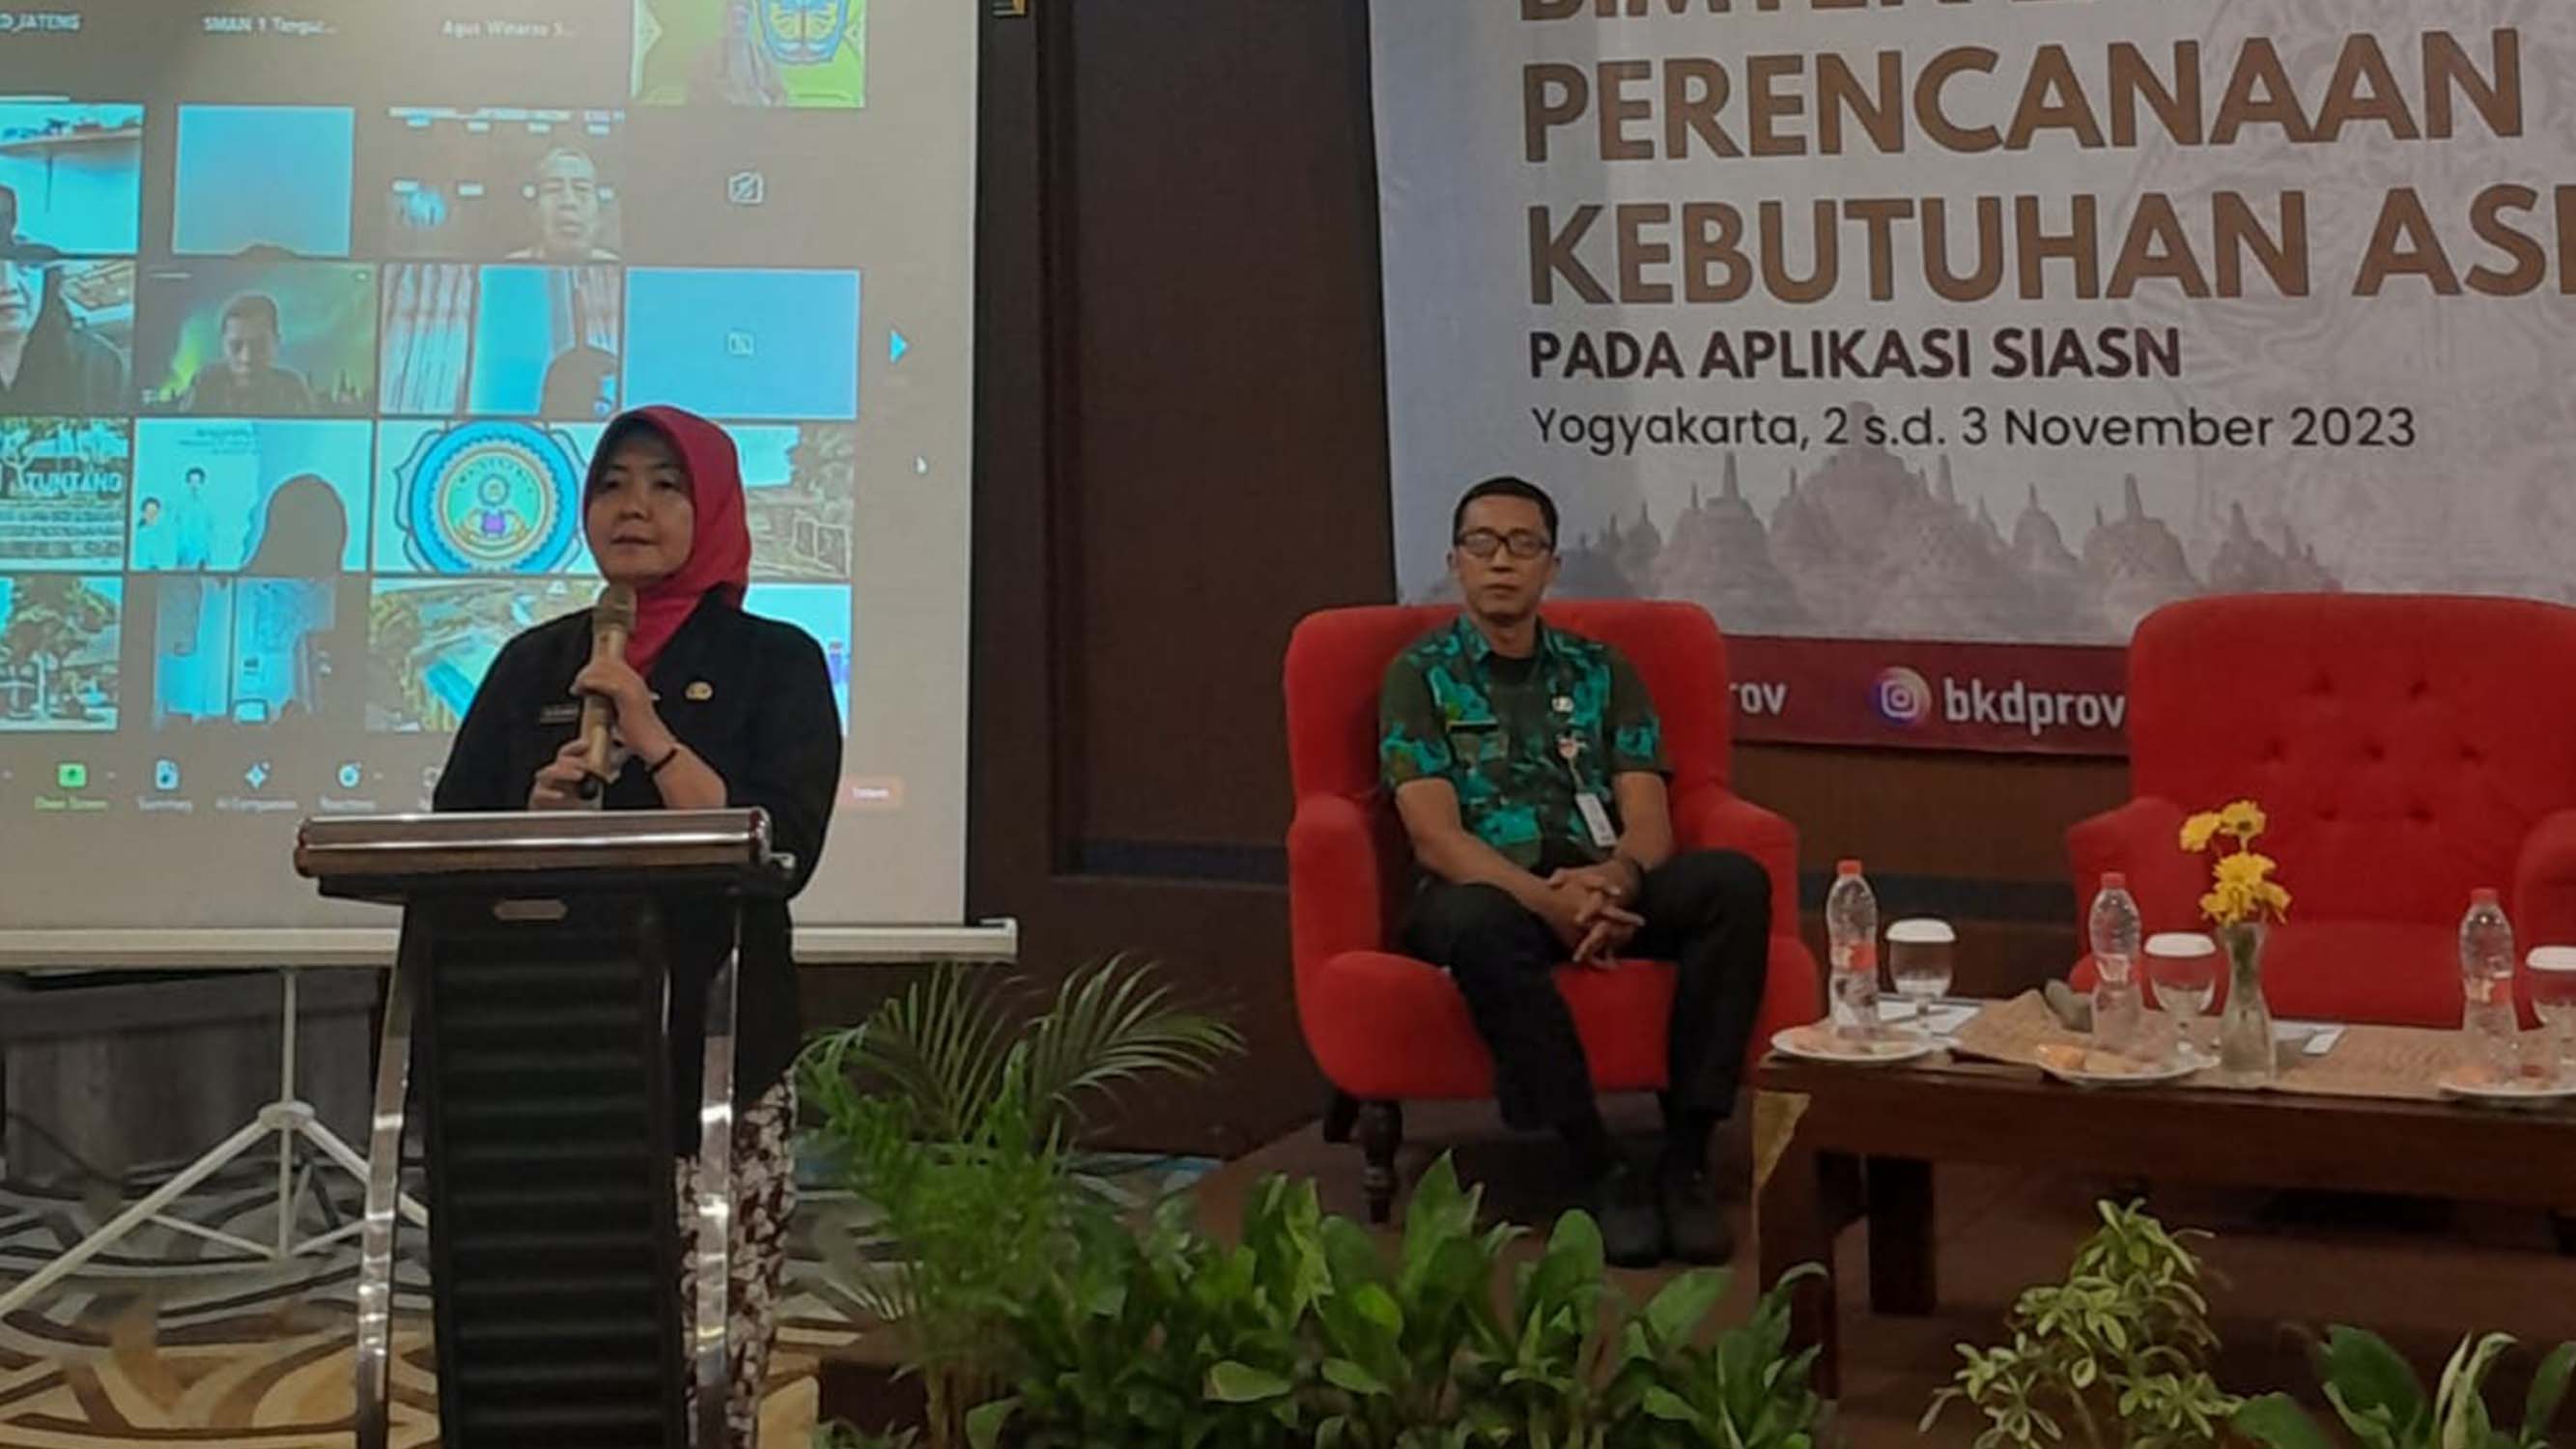 Bimbingan Teknis Layanan Perencanaan Kebutuhan ASN pada Aplikasi SIASN di Lingkungan Pemerintah Provinsi Jawa tengah